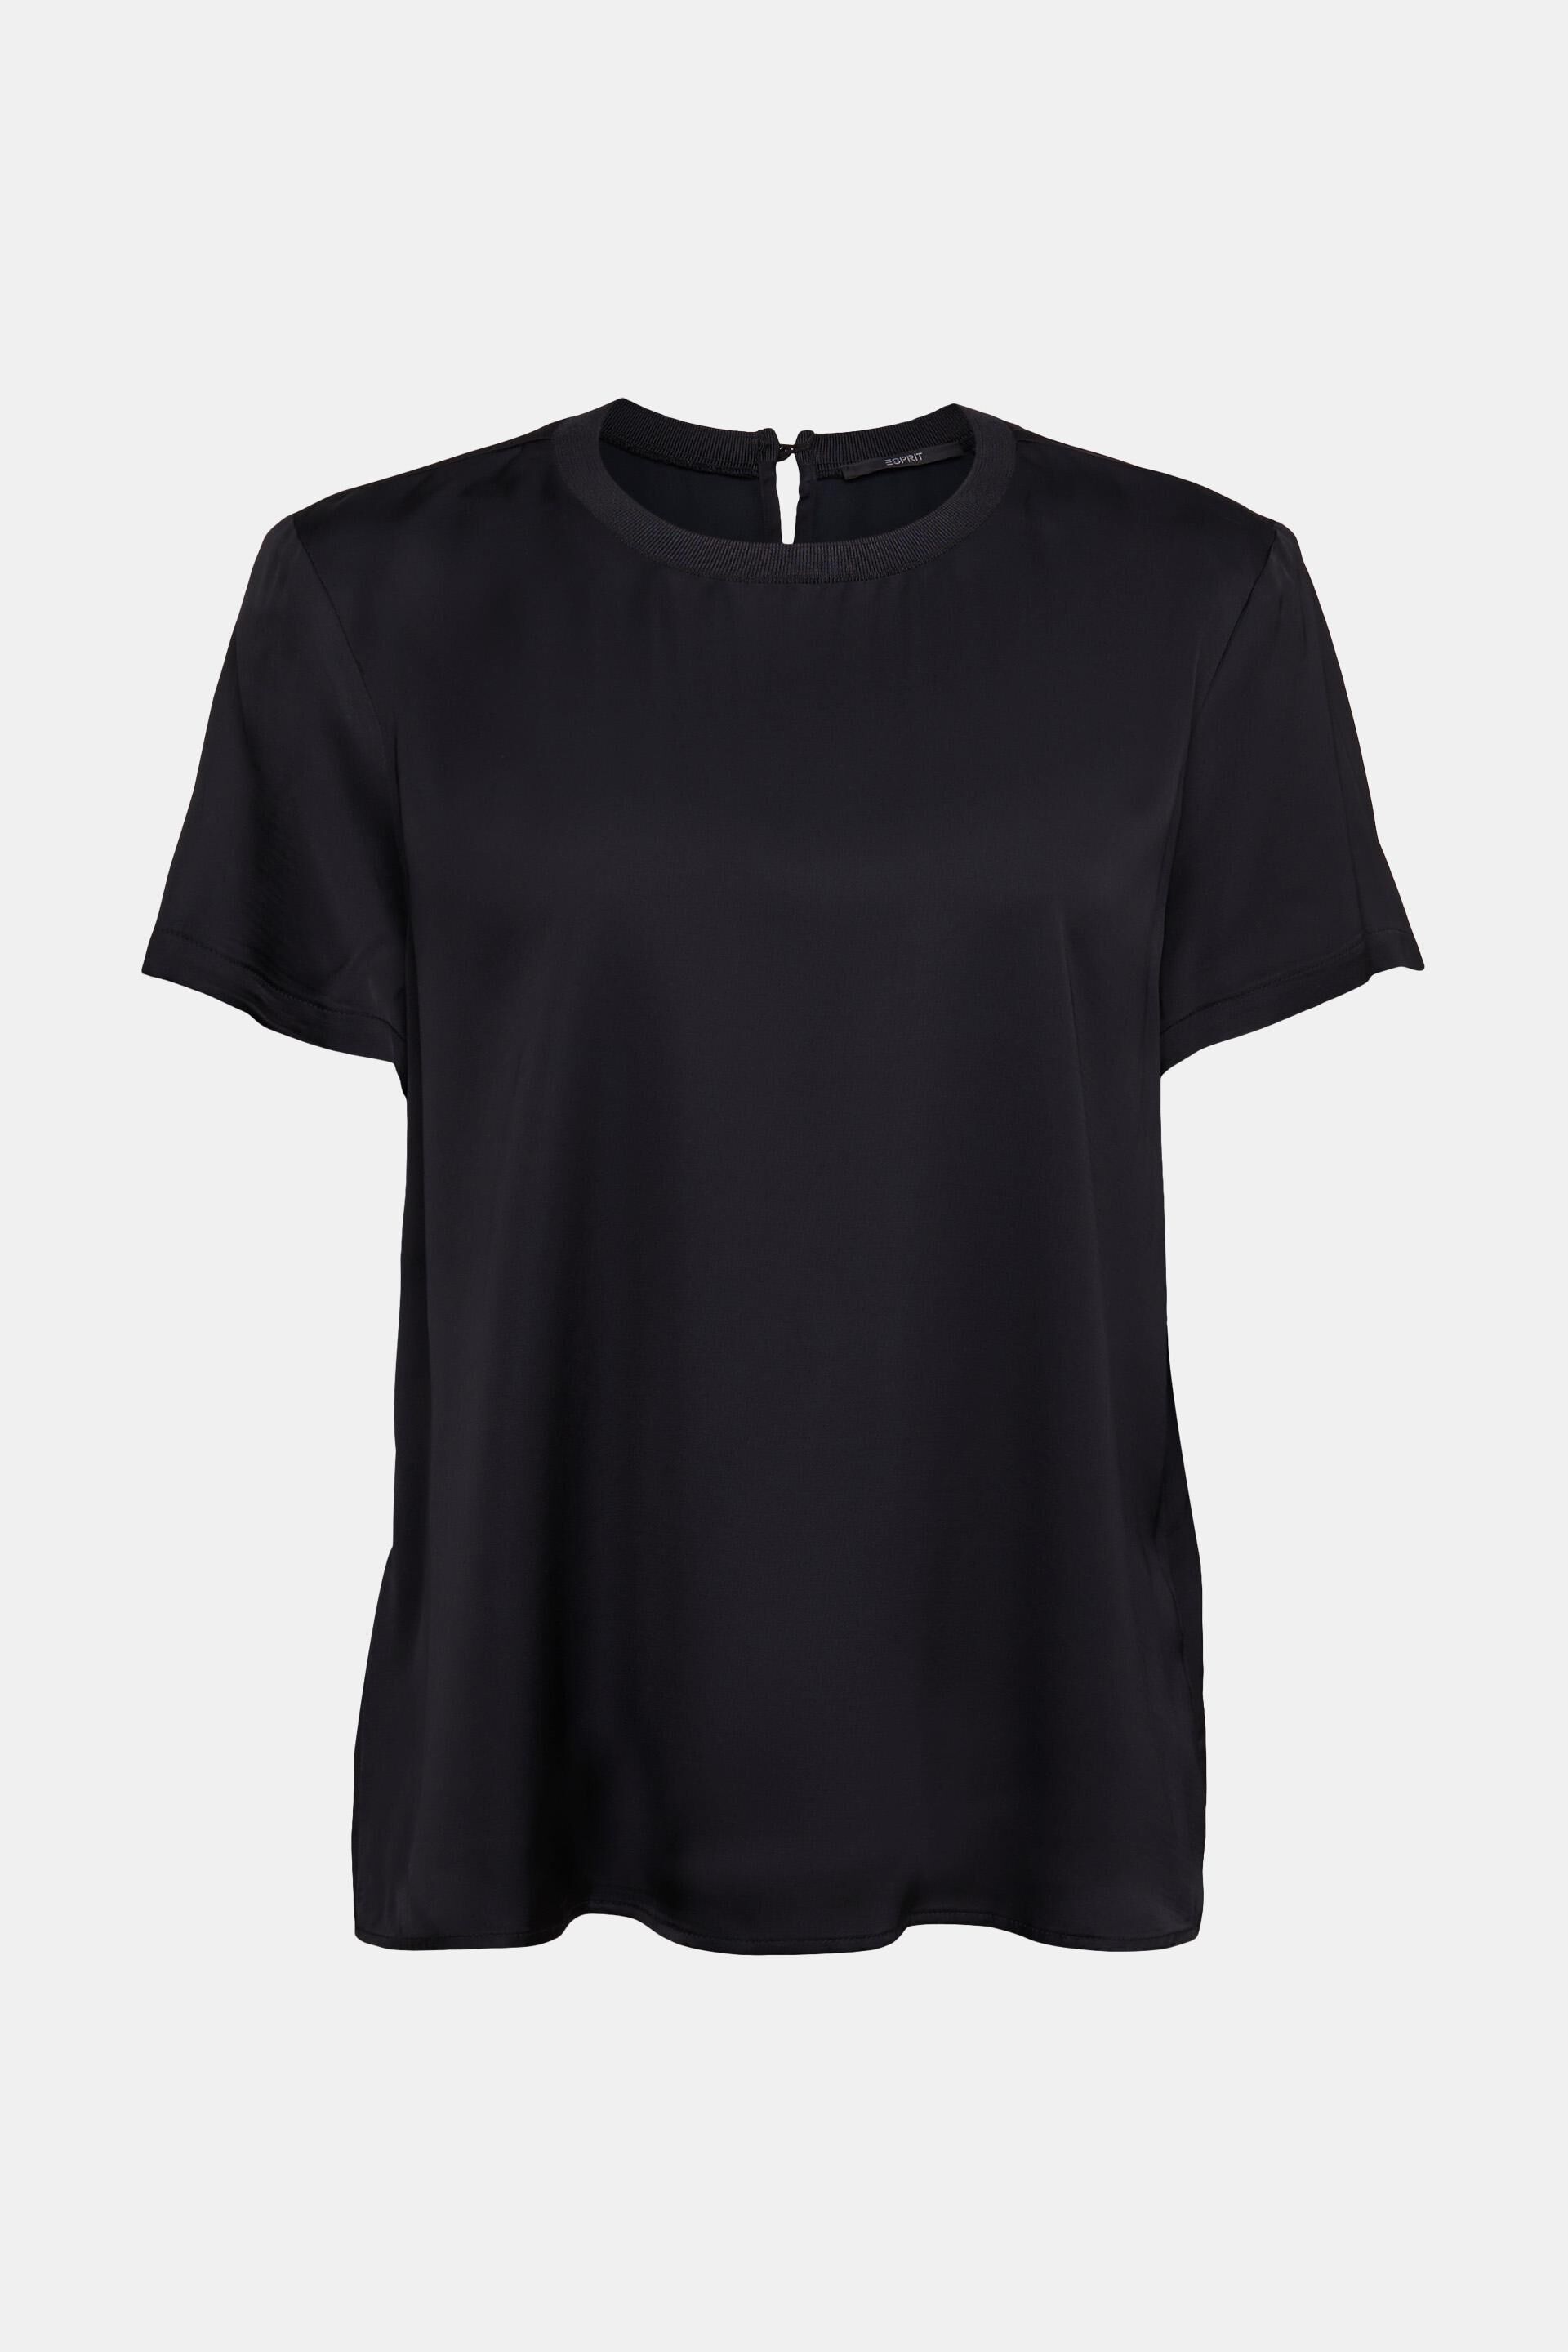 Long Sleeve Keyhole Neckline Embellished T-Shirt containing LENZING™  ECOVERO™ Viscose